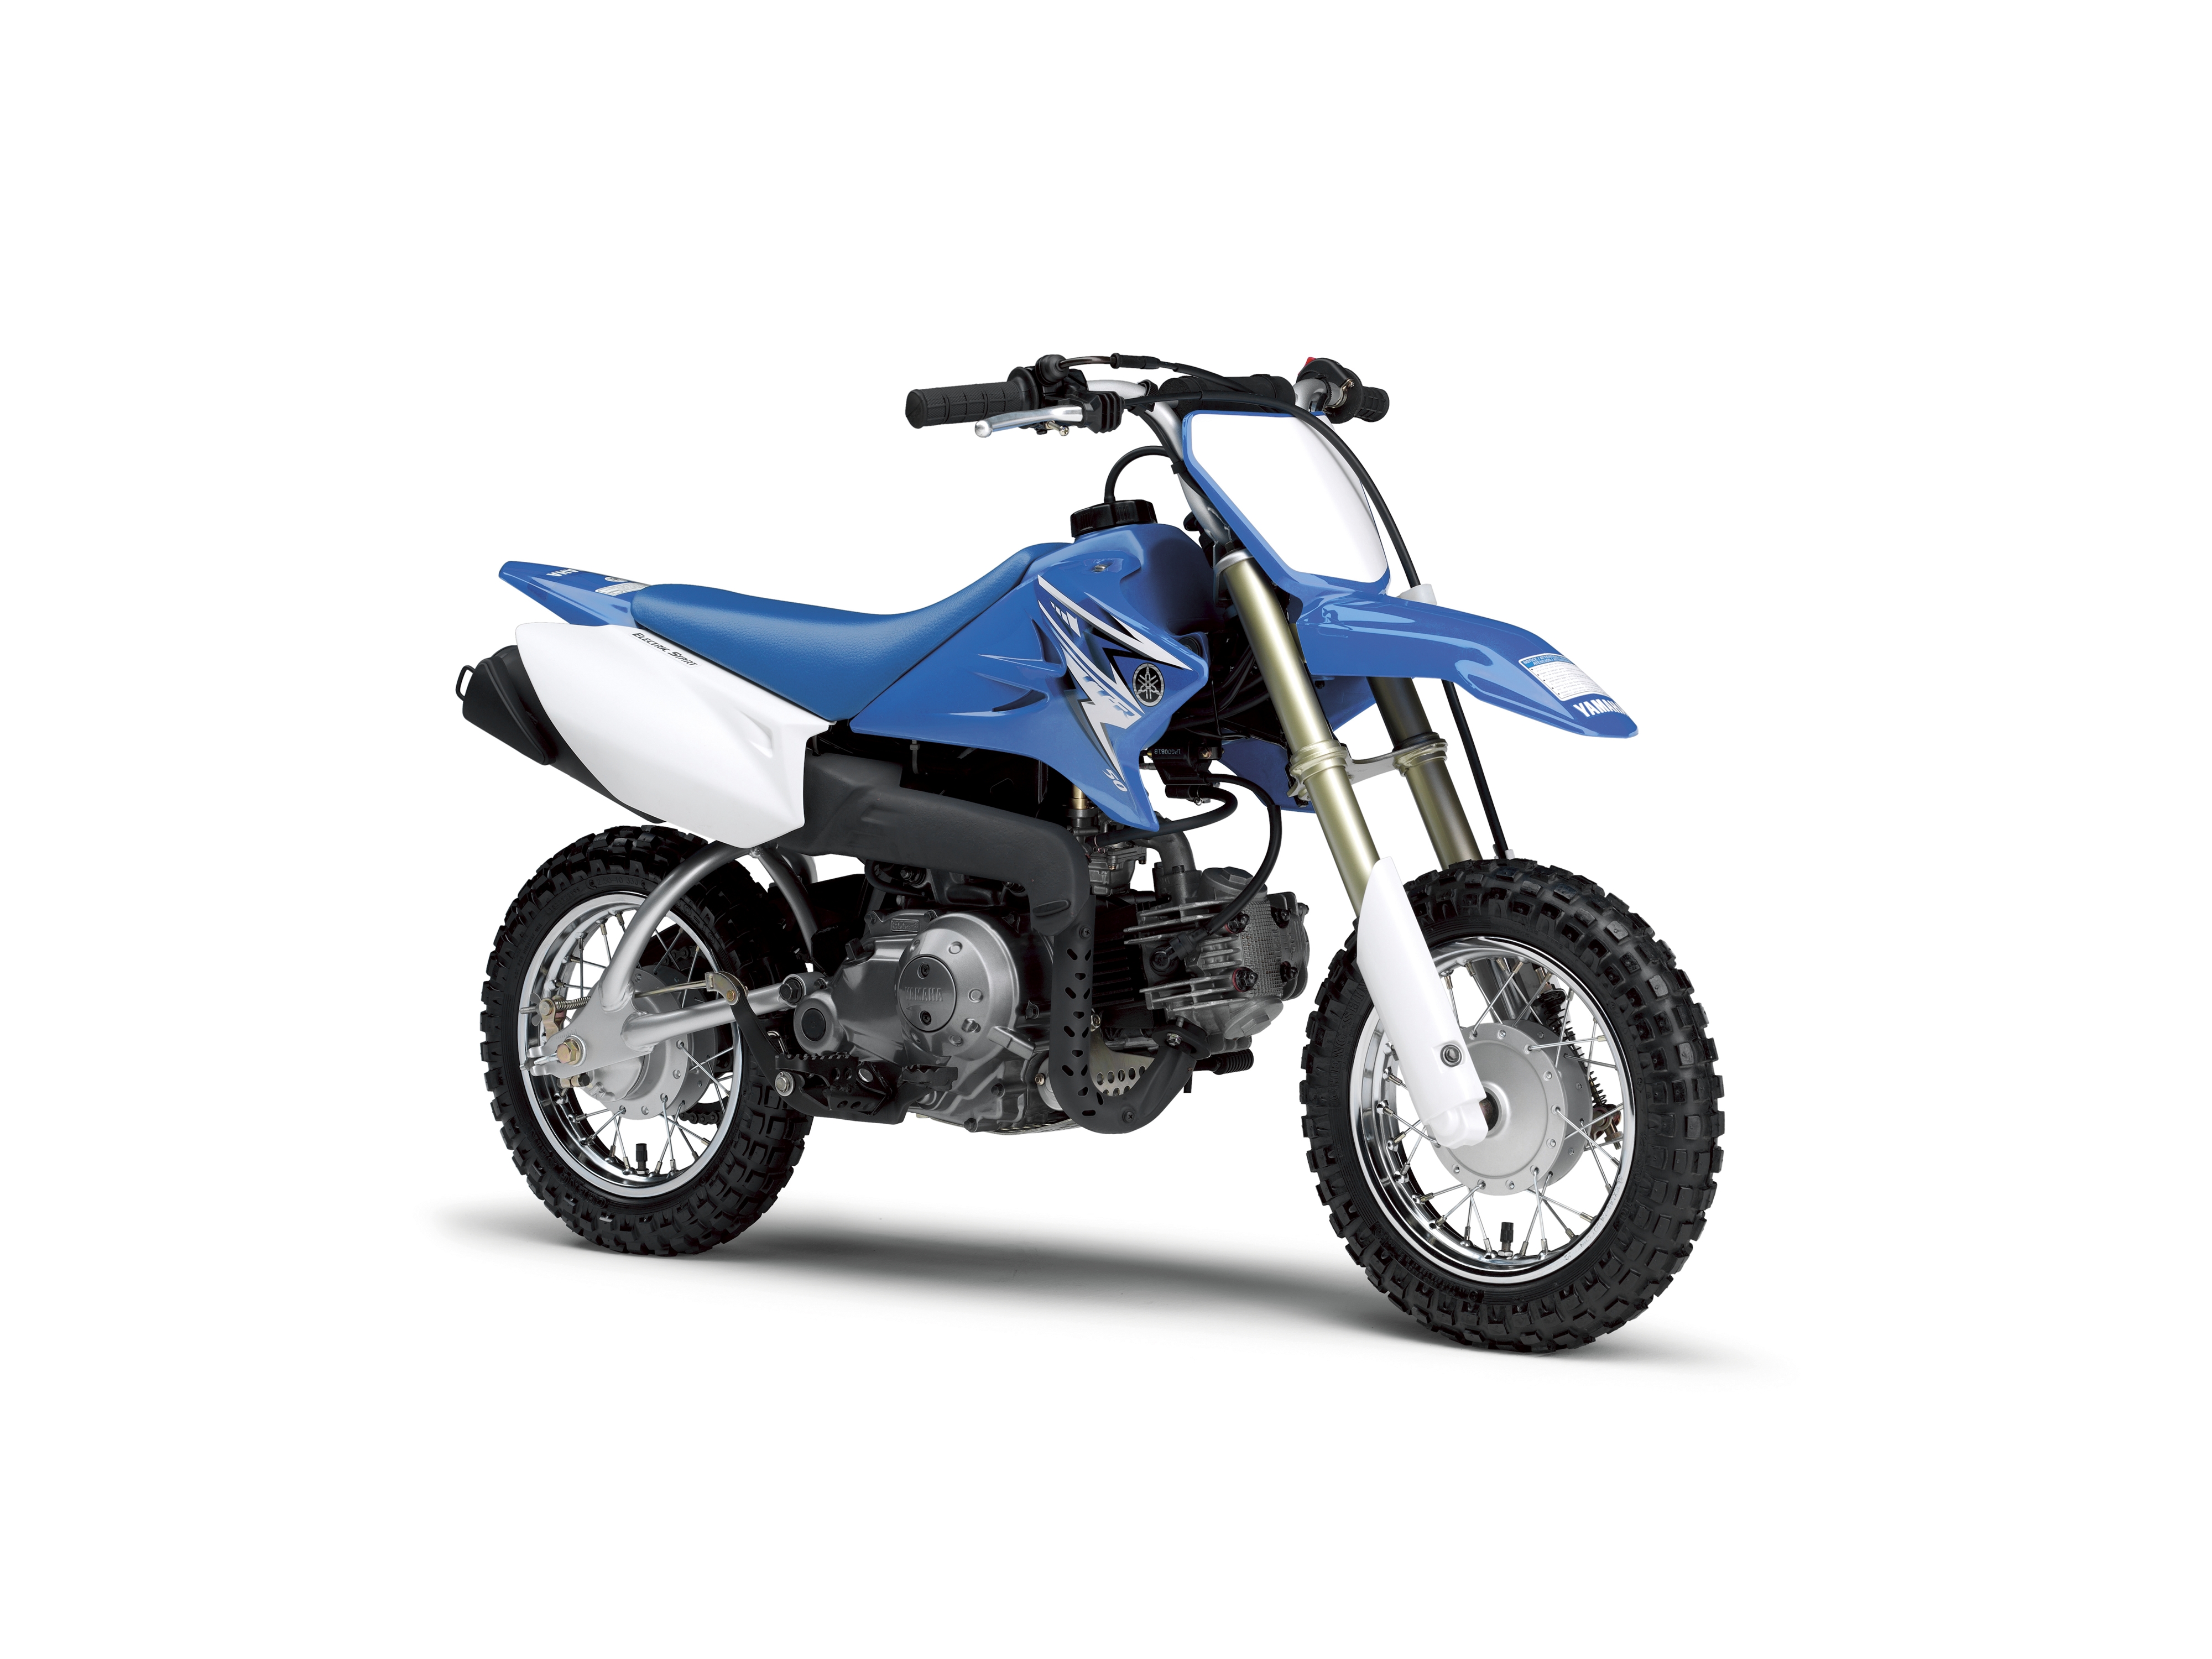 TT-R50E - Motorcycles - Yamaha Motor